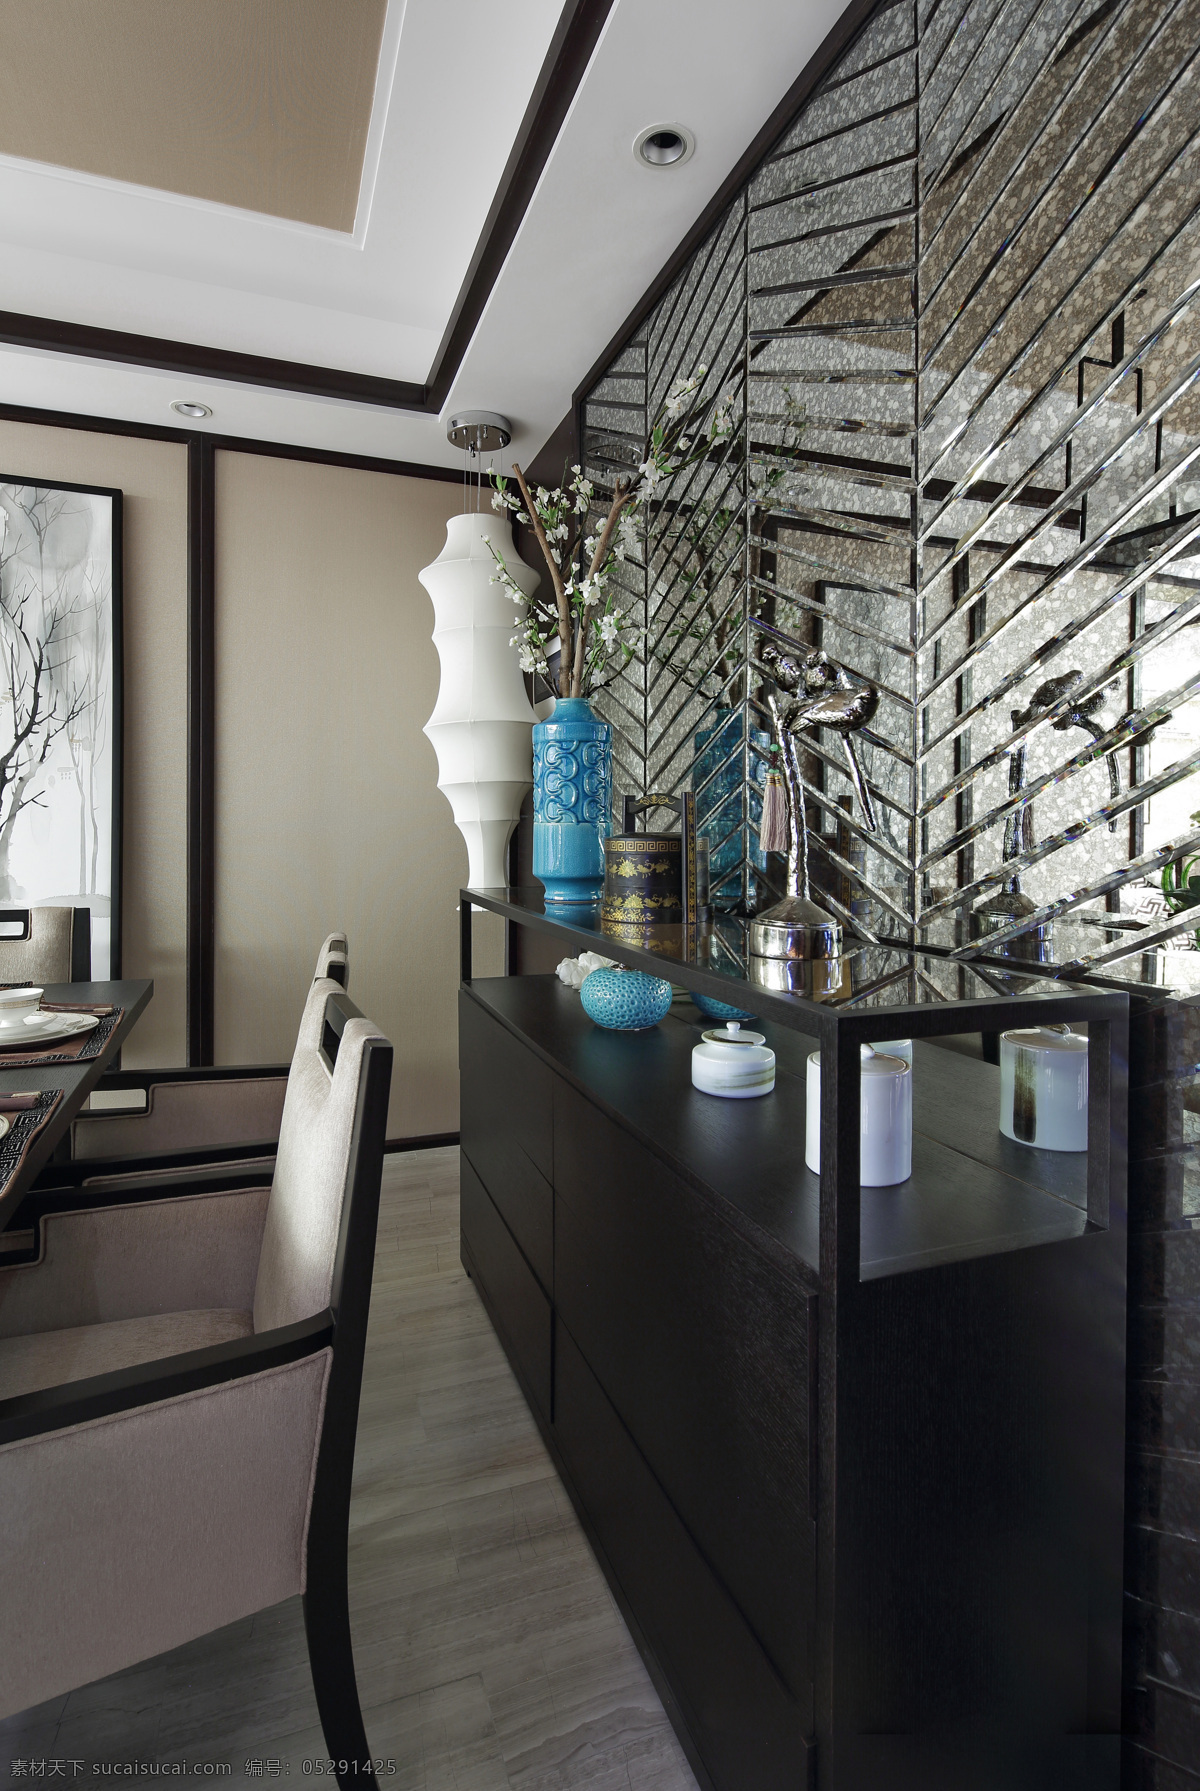 现代 时尚 蓝色 斑点 花瓶 客厅 室内装修 效果图 深灰色地板 黑色柜子 客厅装修 蓝色花瓶